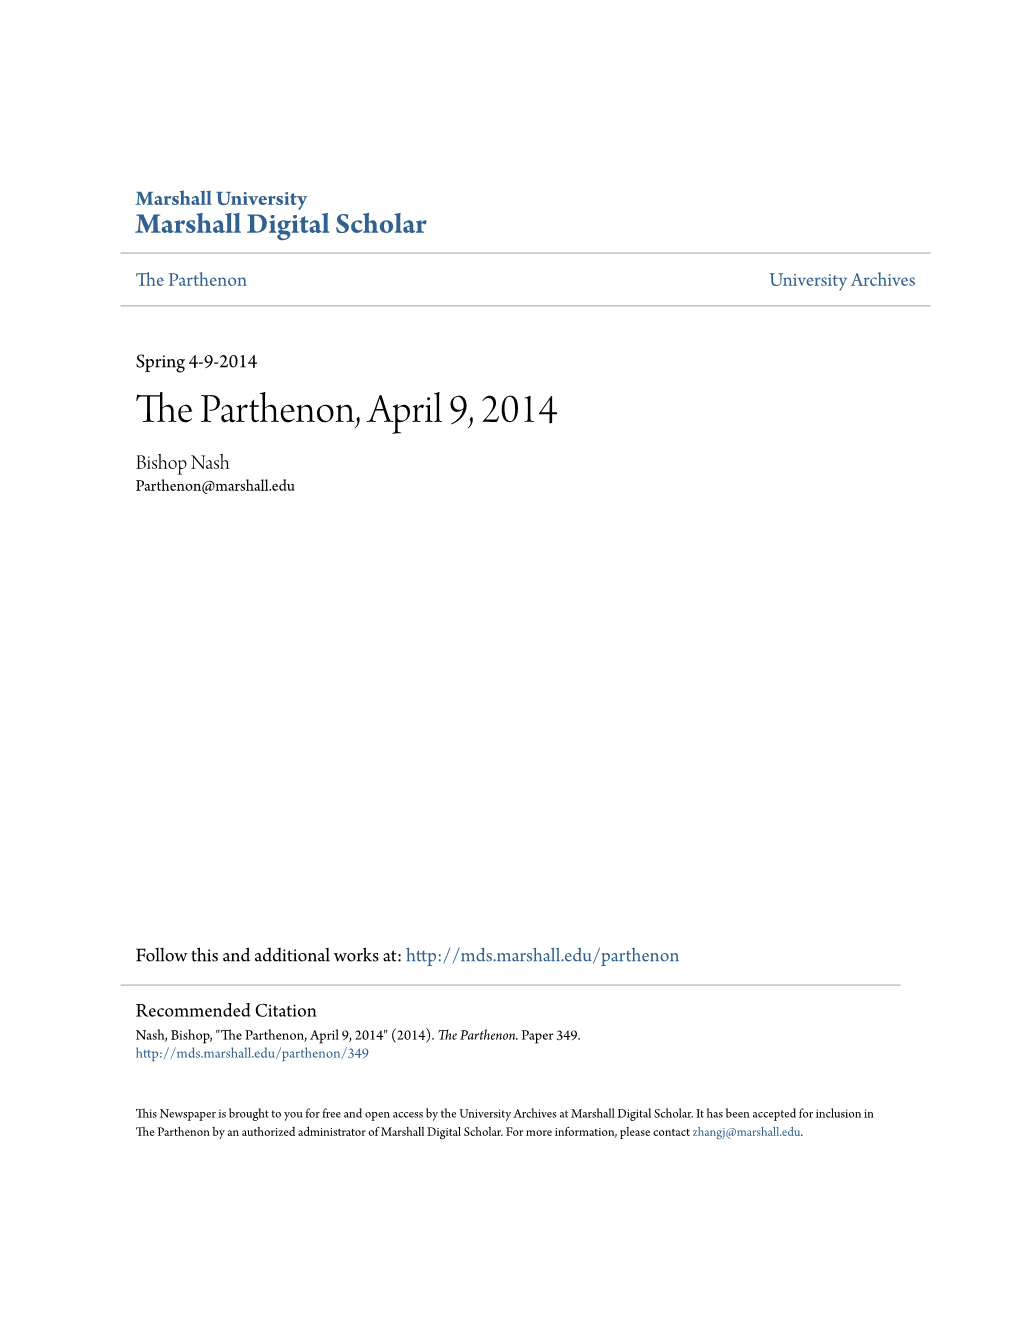 The Parthenon, April 9, 2014